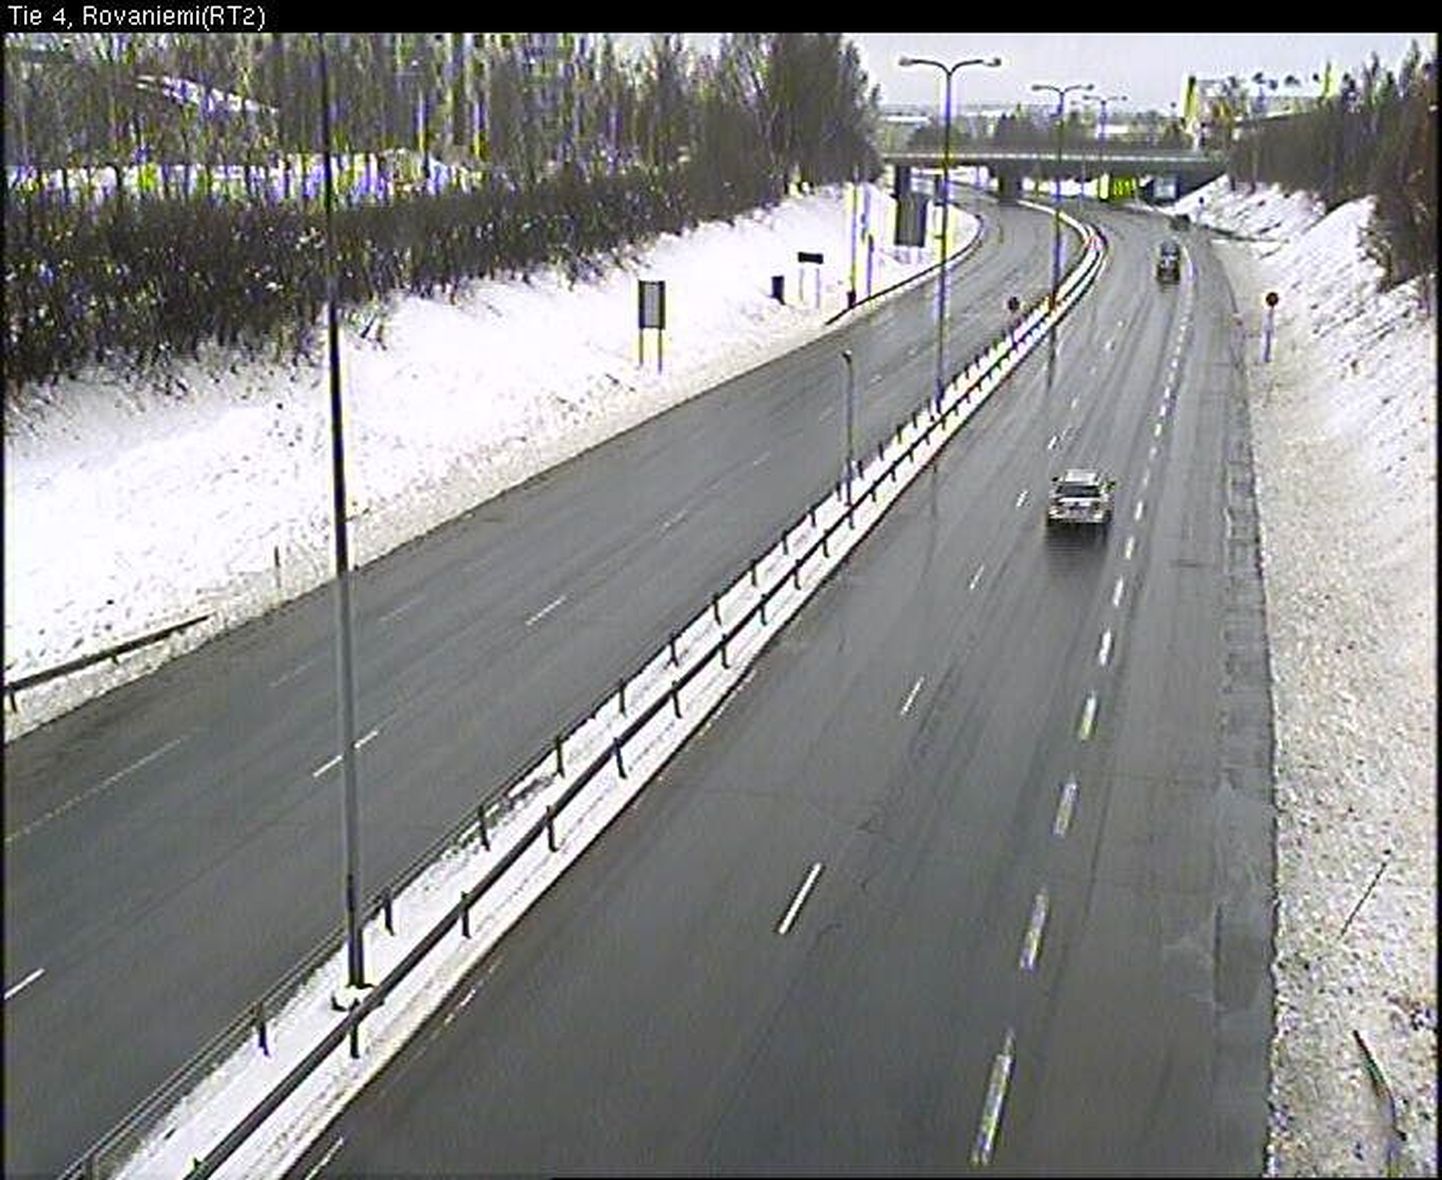 Maantee Rovaniemis, mis viib Kemisse. Maanteekaamerast saadud pilt kella 11.58 seisuga.